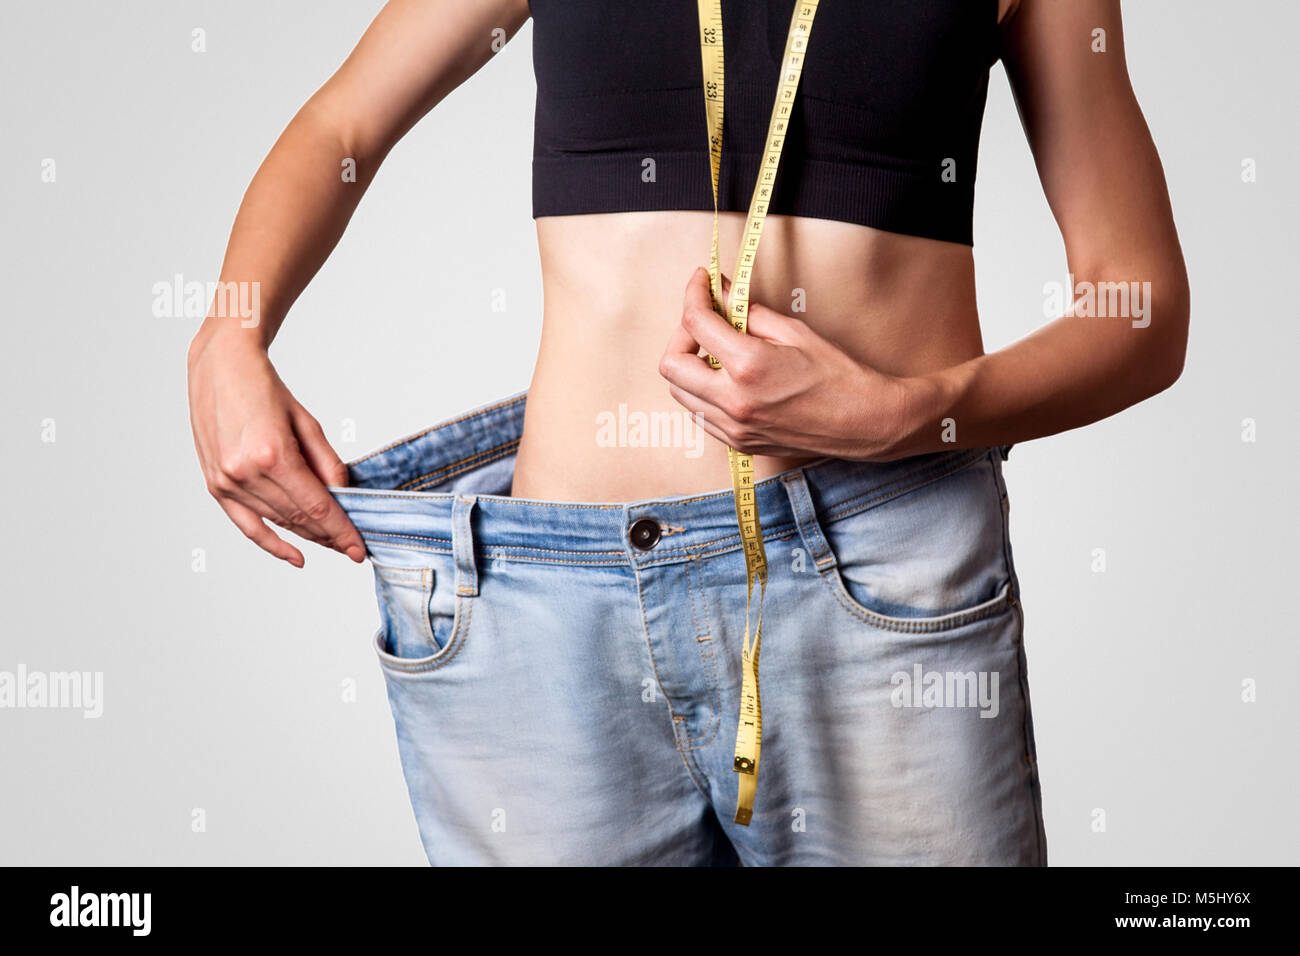 Nahaufnahme der schlanke Taille der jungen Frau in big Jeans zeigen erfolgreiche Gewichtsabnahme, isoliert auf hellgrauen Hintergrund, Diät Konzept. Stockfoto